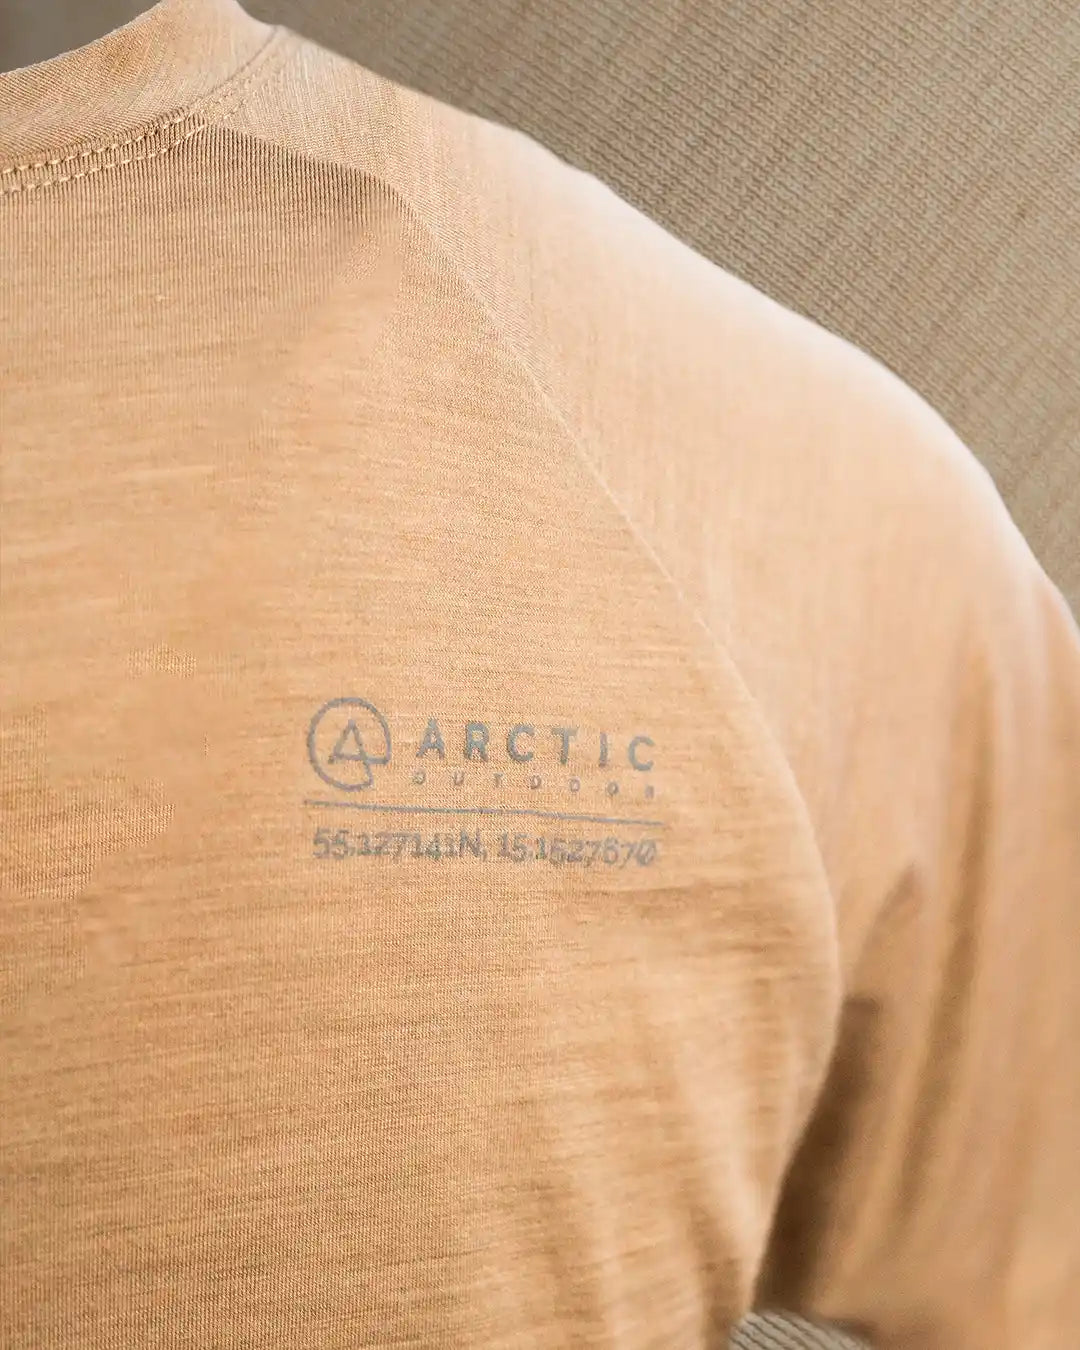 Produktbillede af sand merinould t-shirt ryglogo